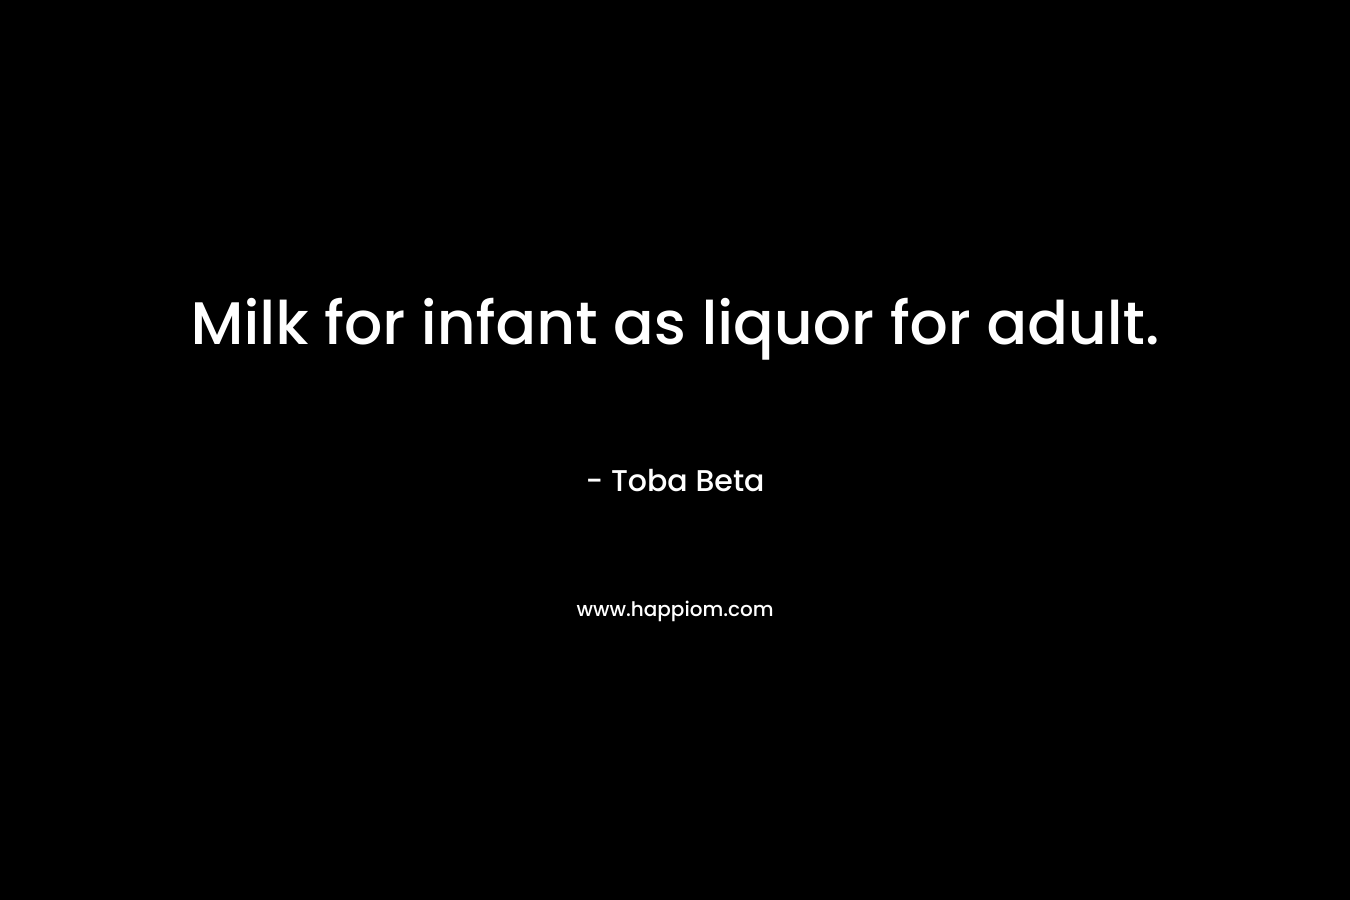 Milk for infant as liquor for adult. – Toba Beta